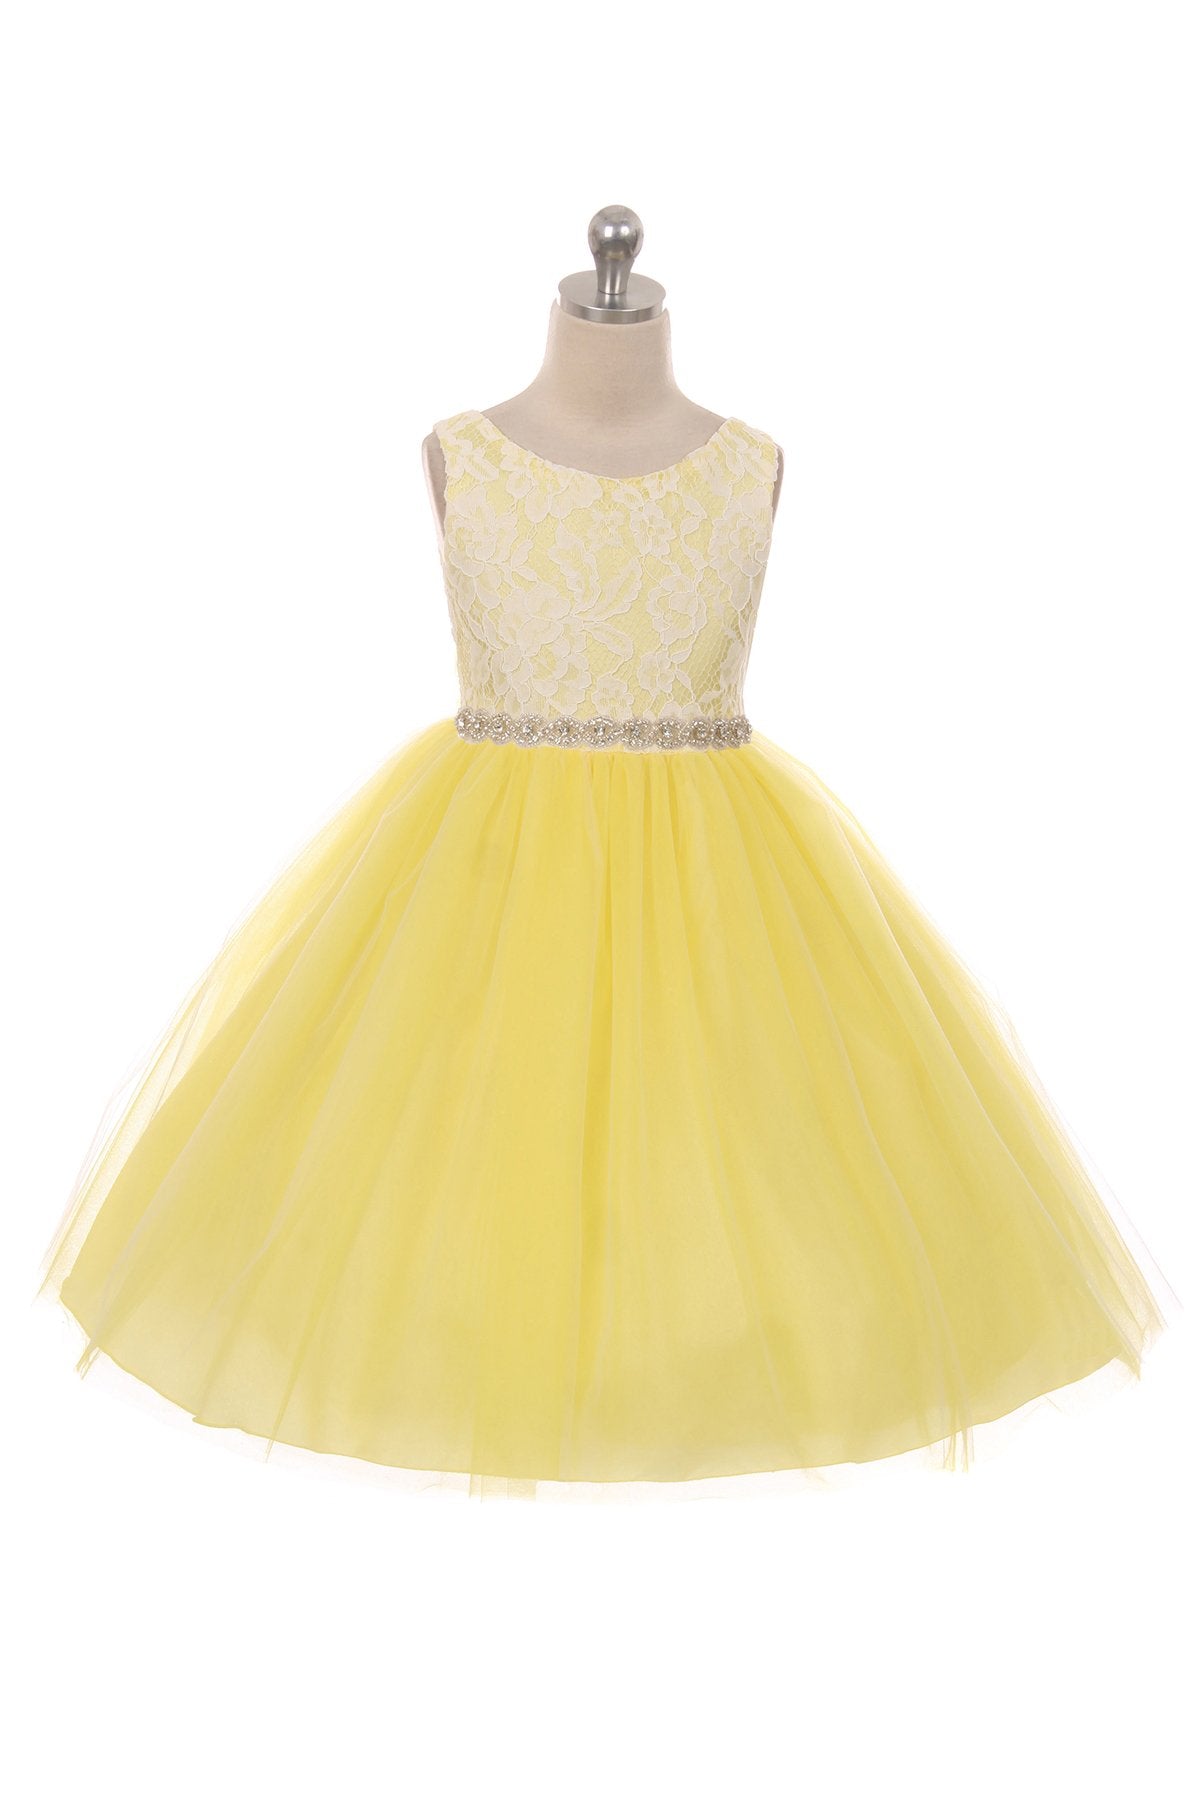 Dress - Lace Dress W/ Rhinestone Trim